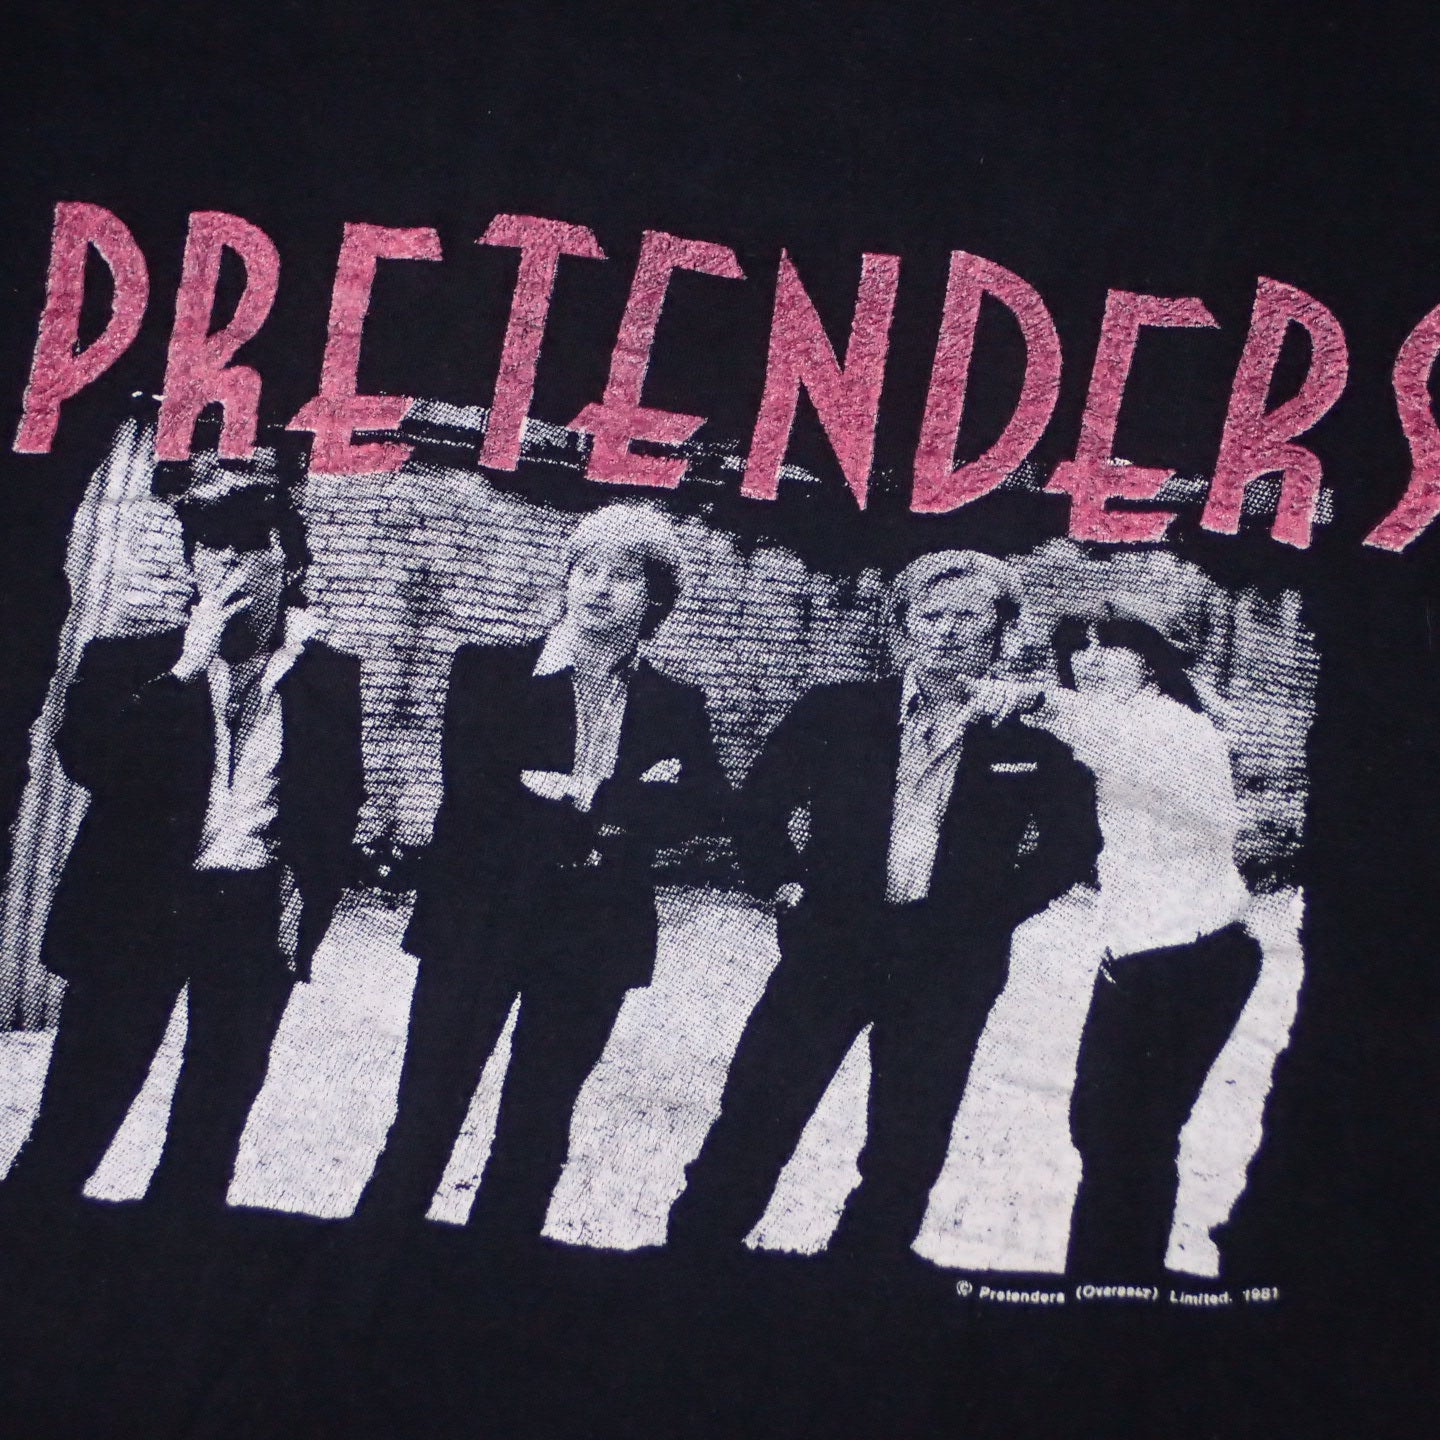 80s The Pretenders T-shirt "1981 Tour Tee"